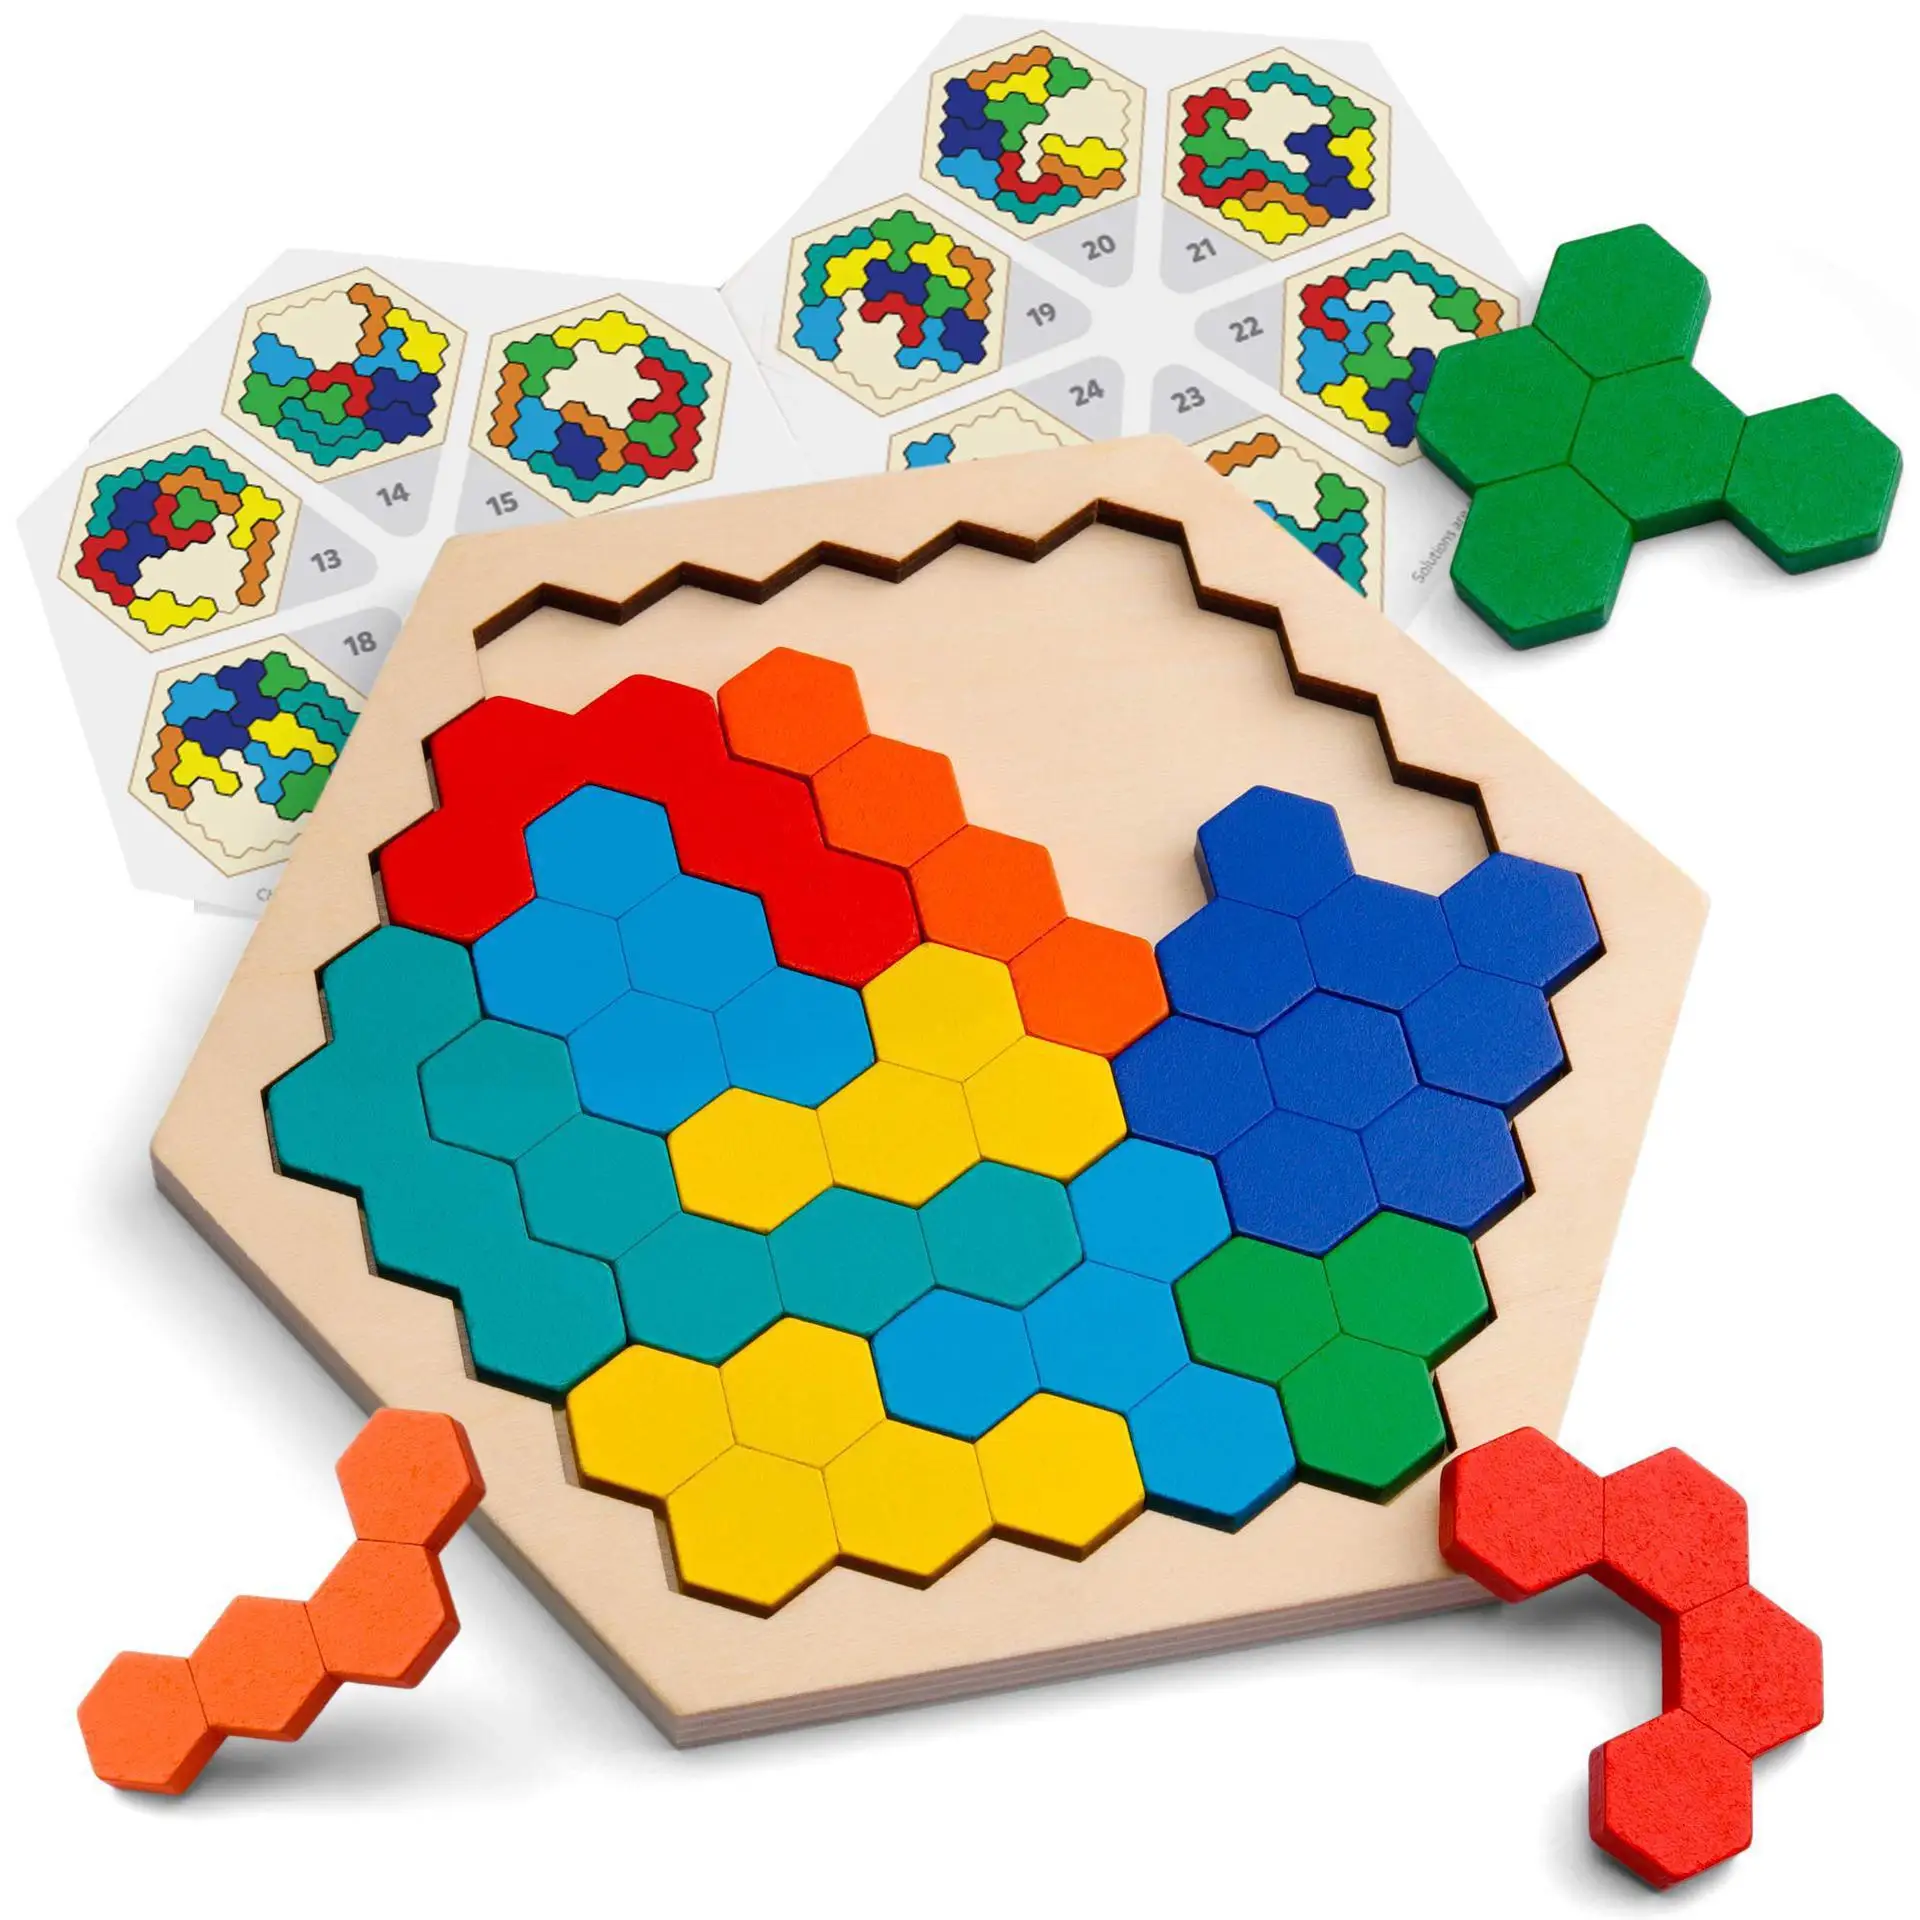 

Деревянные головоломки, игрушки для детей, танграммы, Логические головоломки, красочные шестиугольные развивающие игры Монтессори, детски...